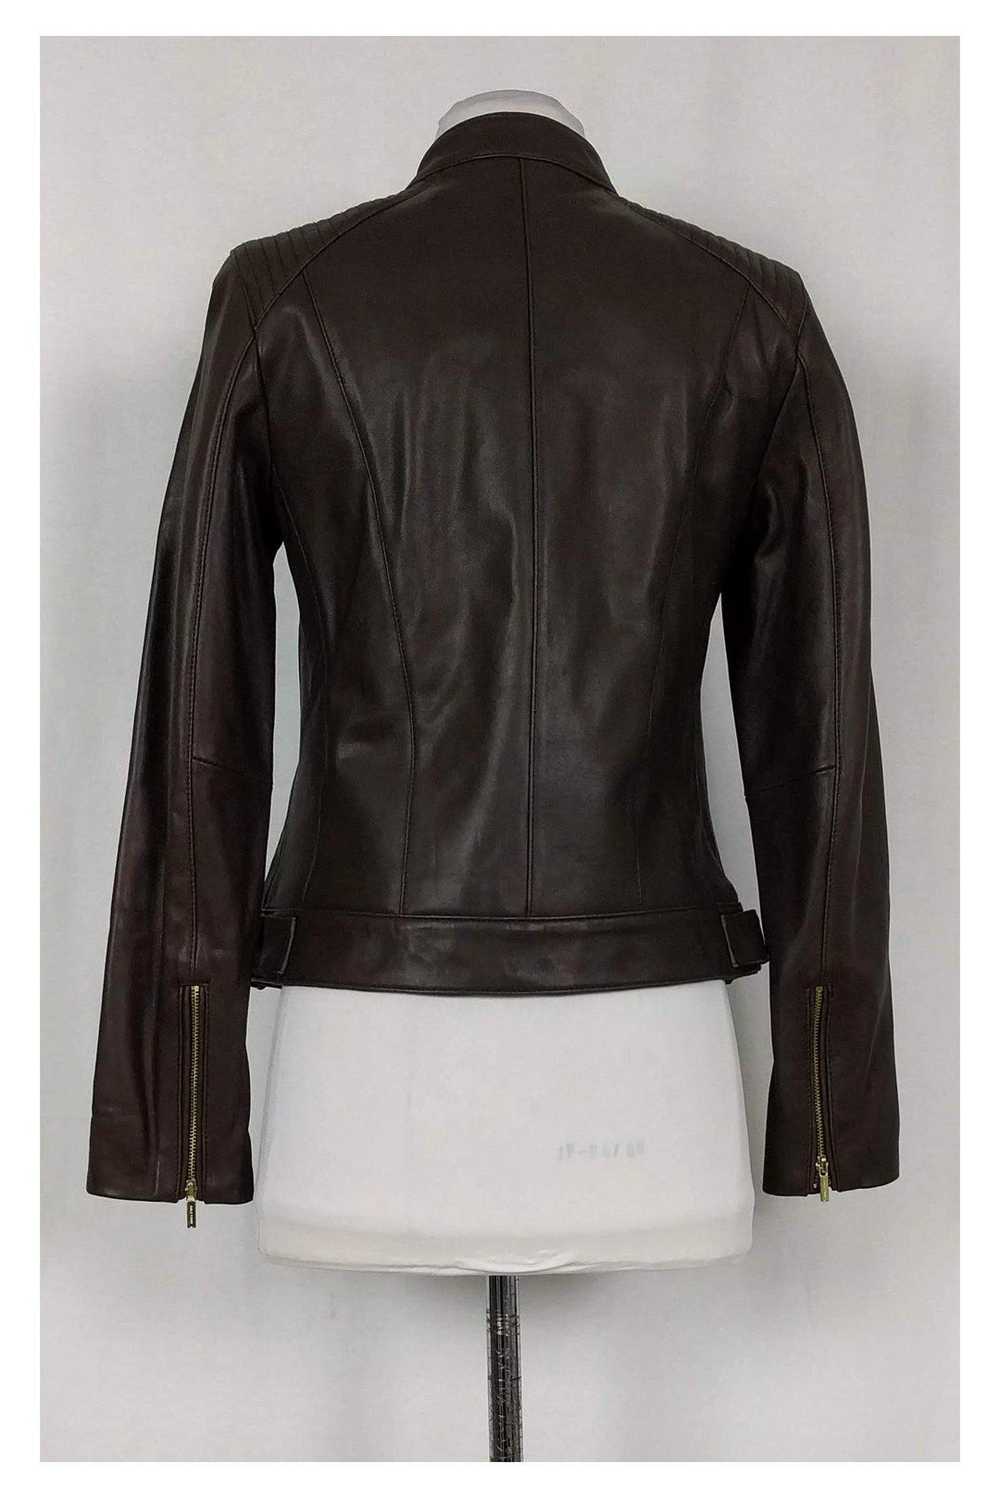 Cole Haan - Brown Leather Zip Jacket Sz S - image 3